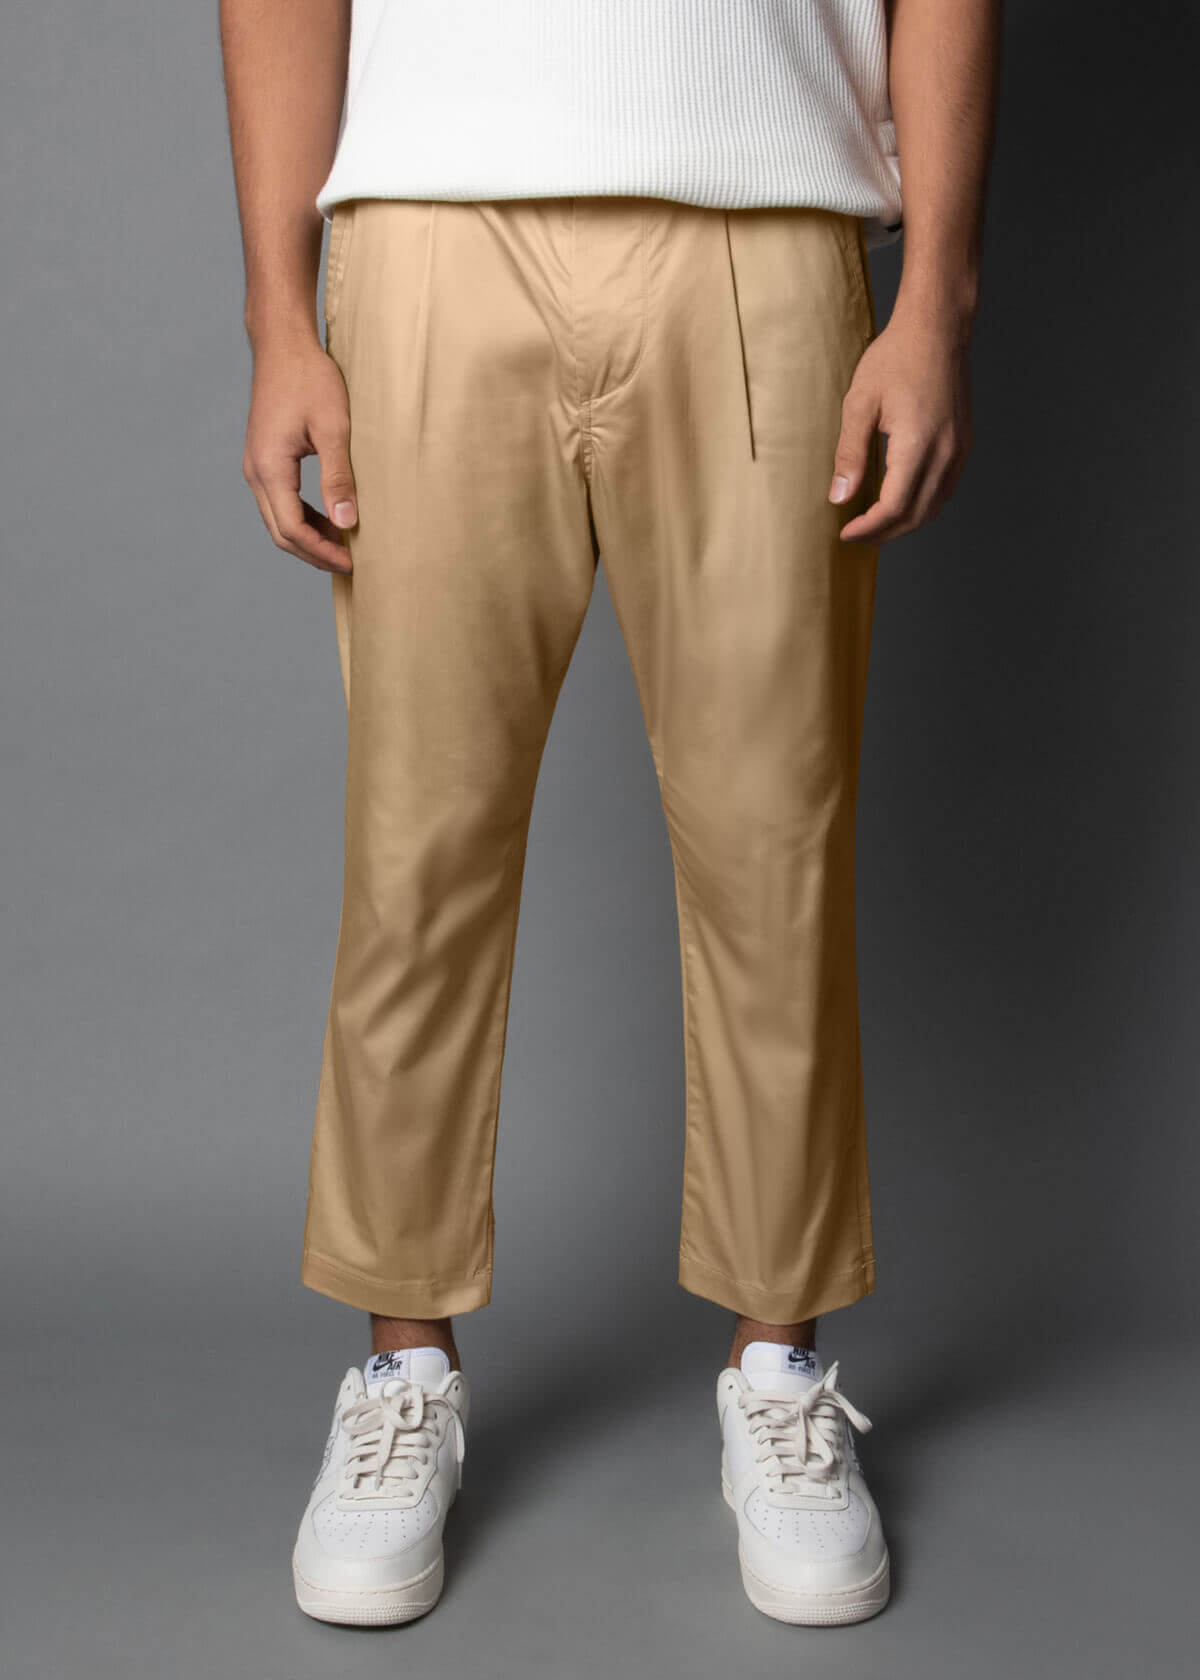 light khaki cotton pants for men